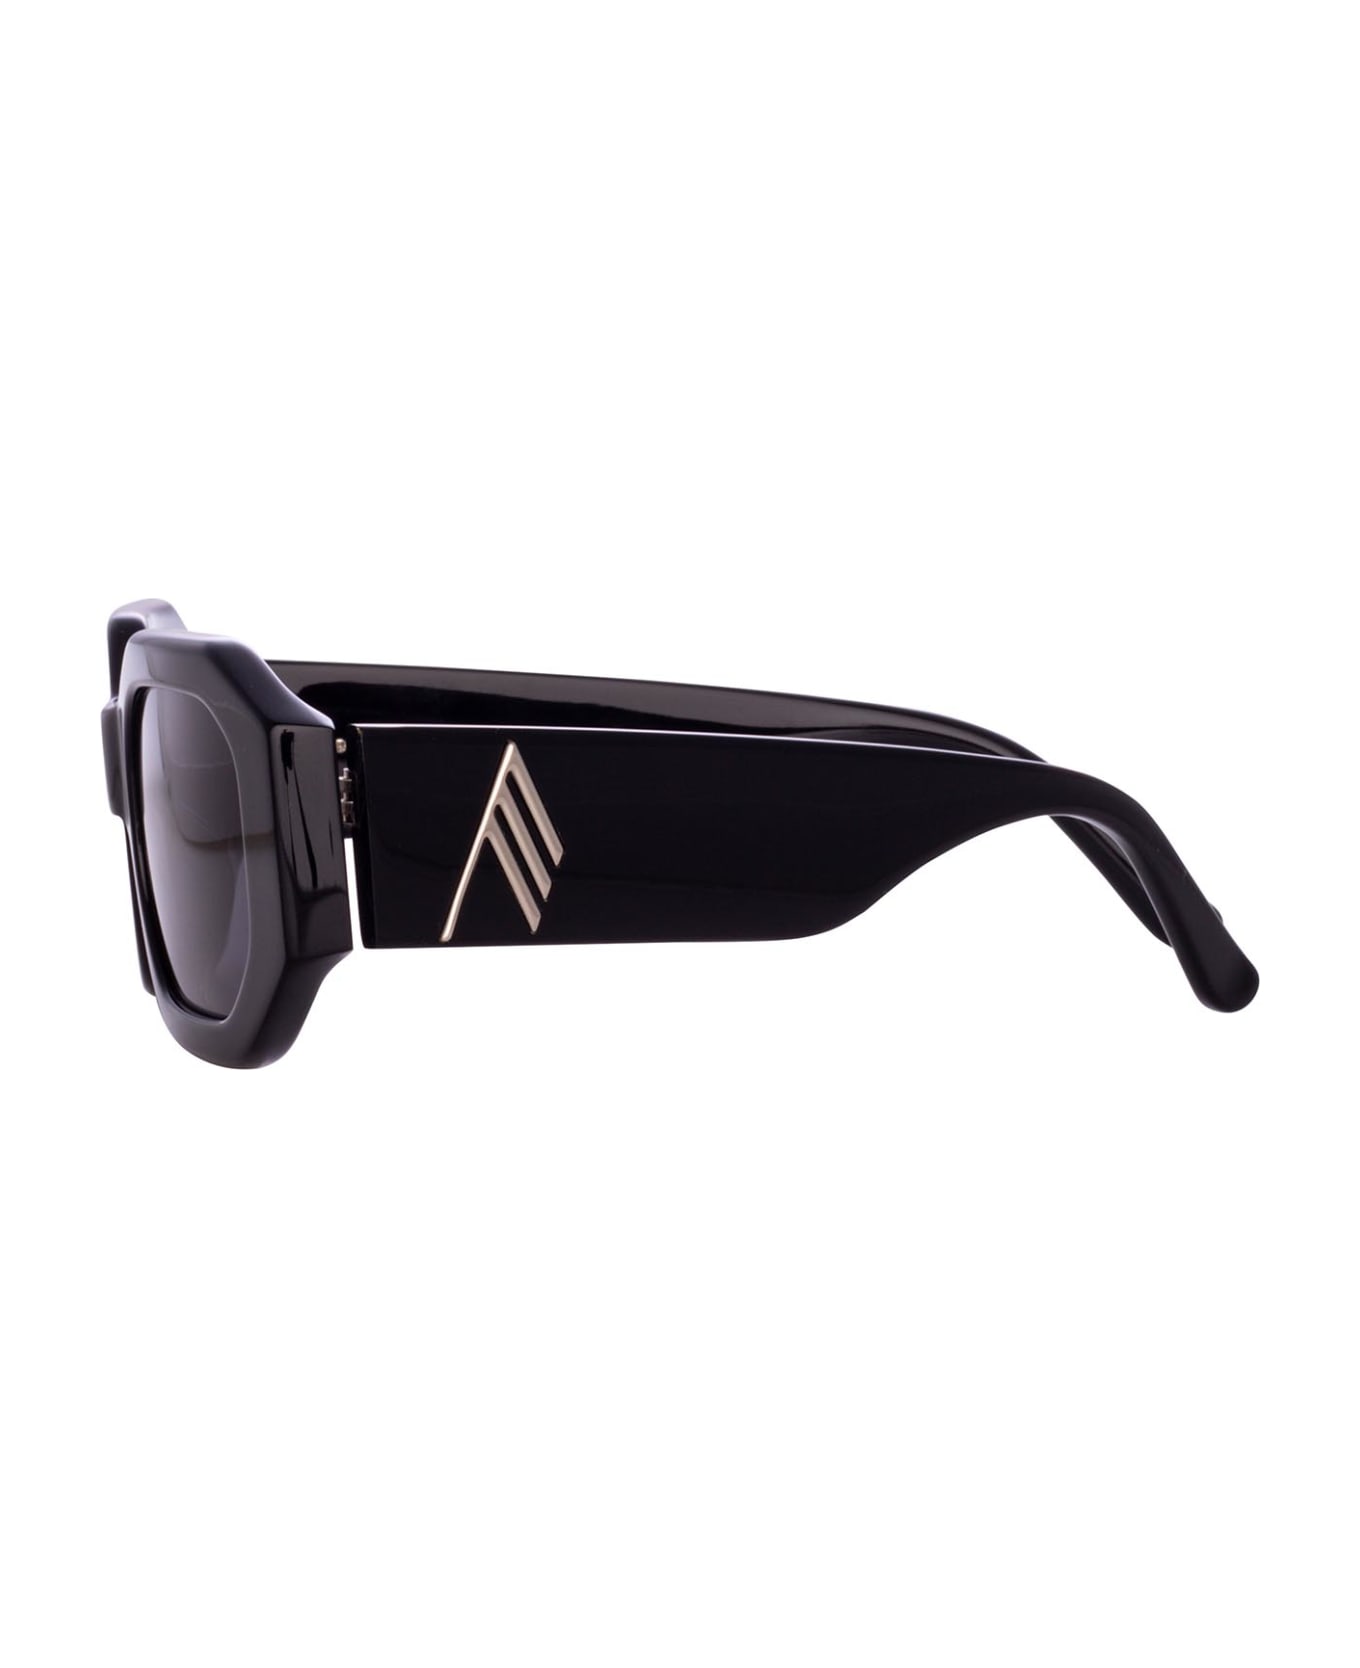 Linda Farrow Attico45 Black / Silver Sunglasses - Black / Silver サングラス